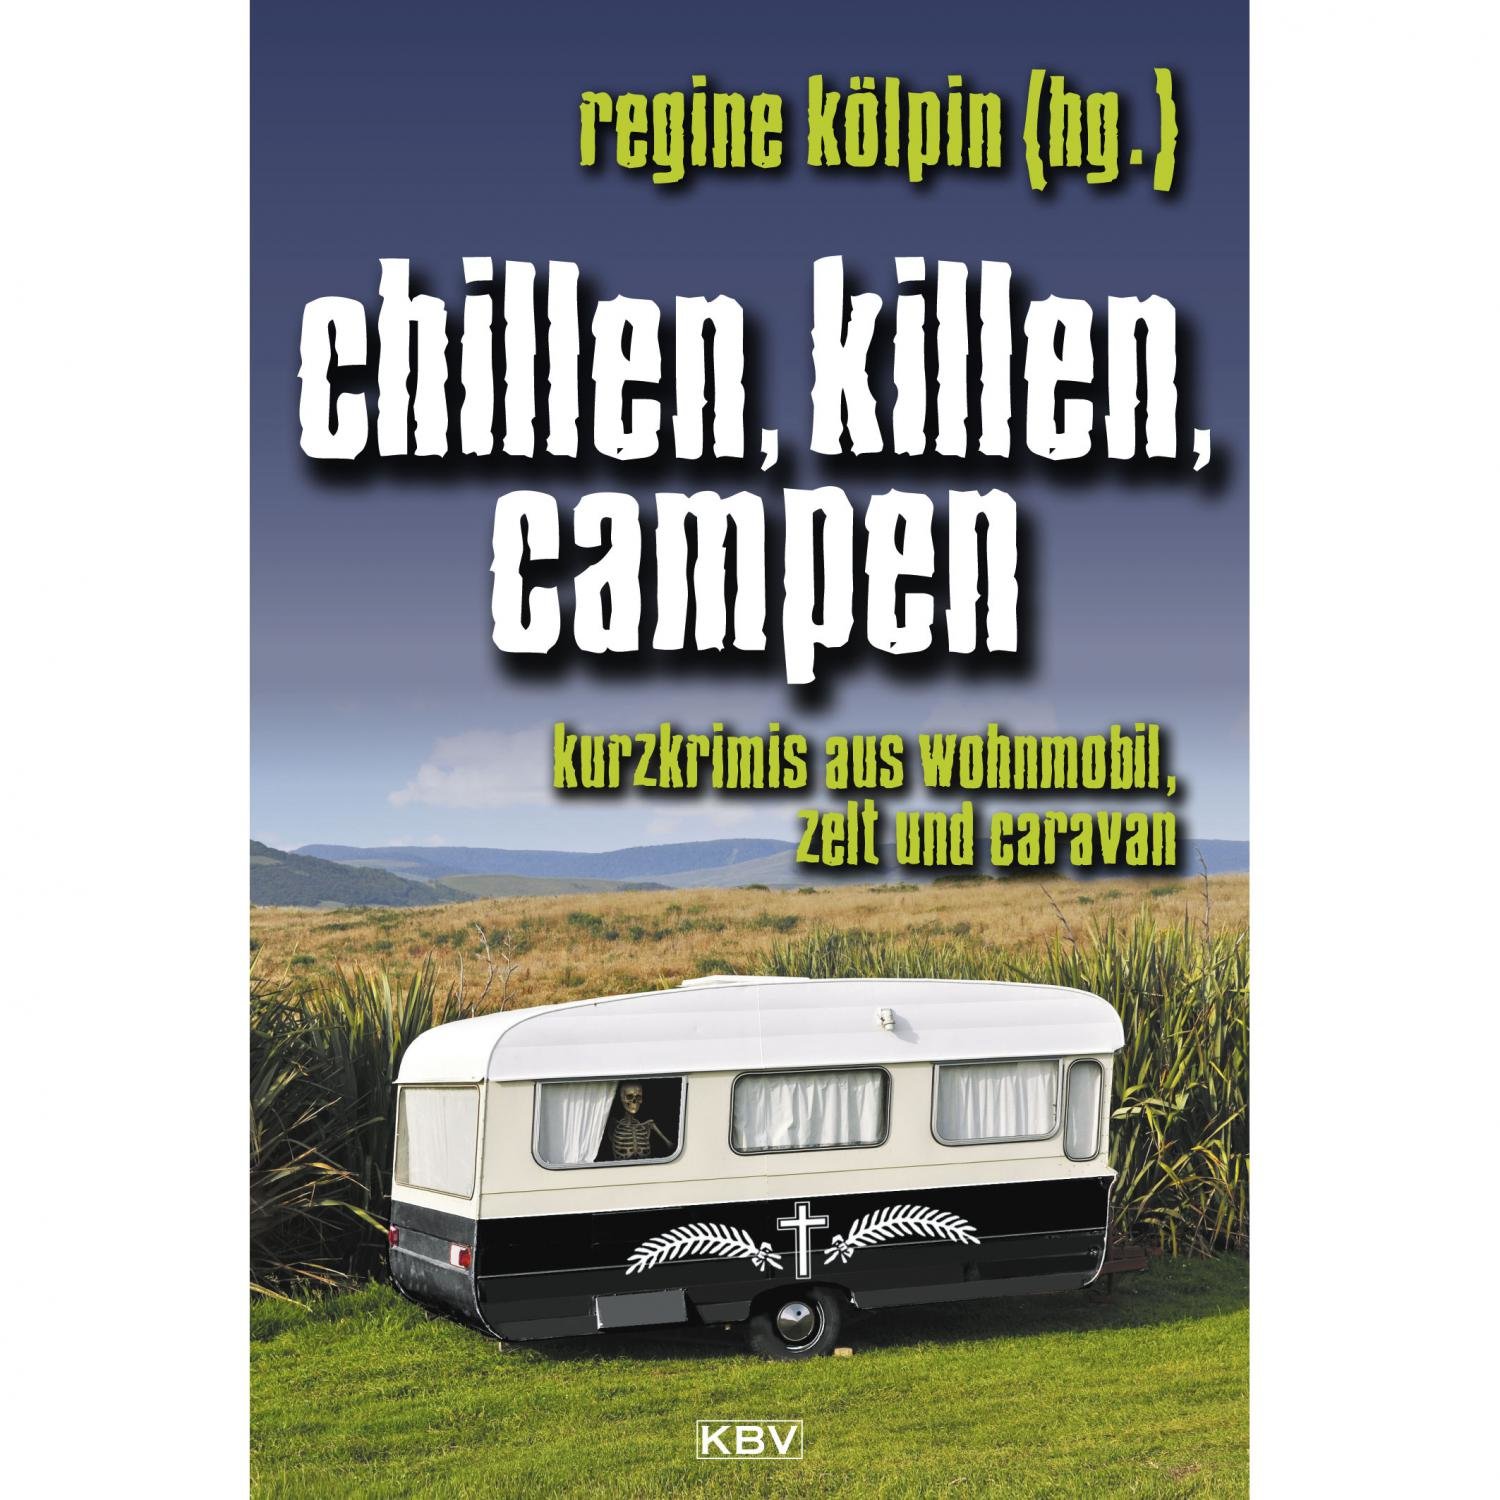 Regine Kölpin – Chillen, killen, campen. Kurzkrimis aus Wohnmobil, Zelt und Caravan